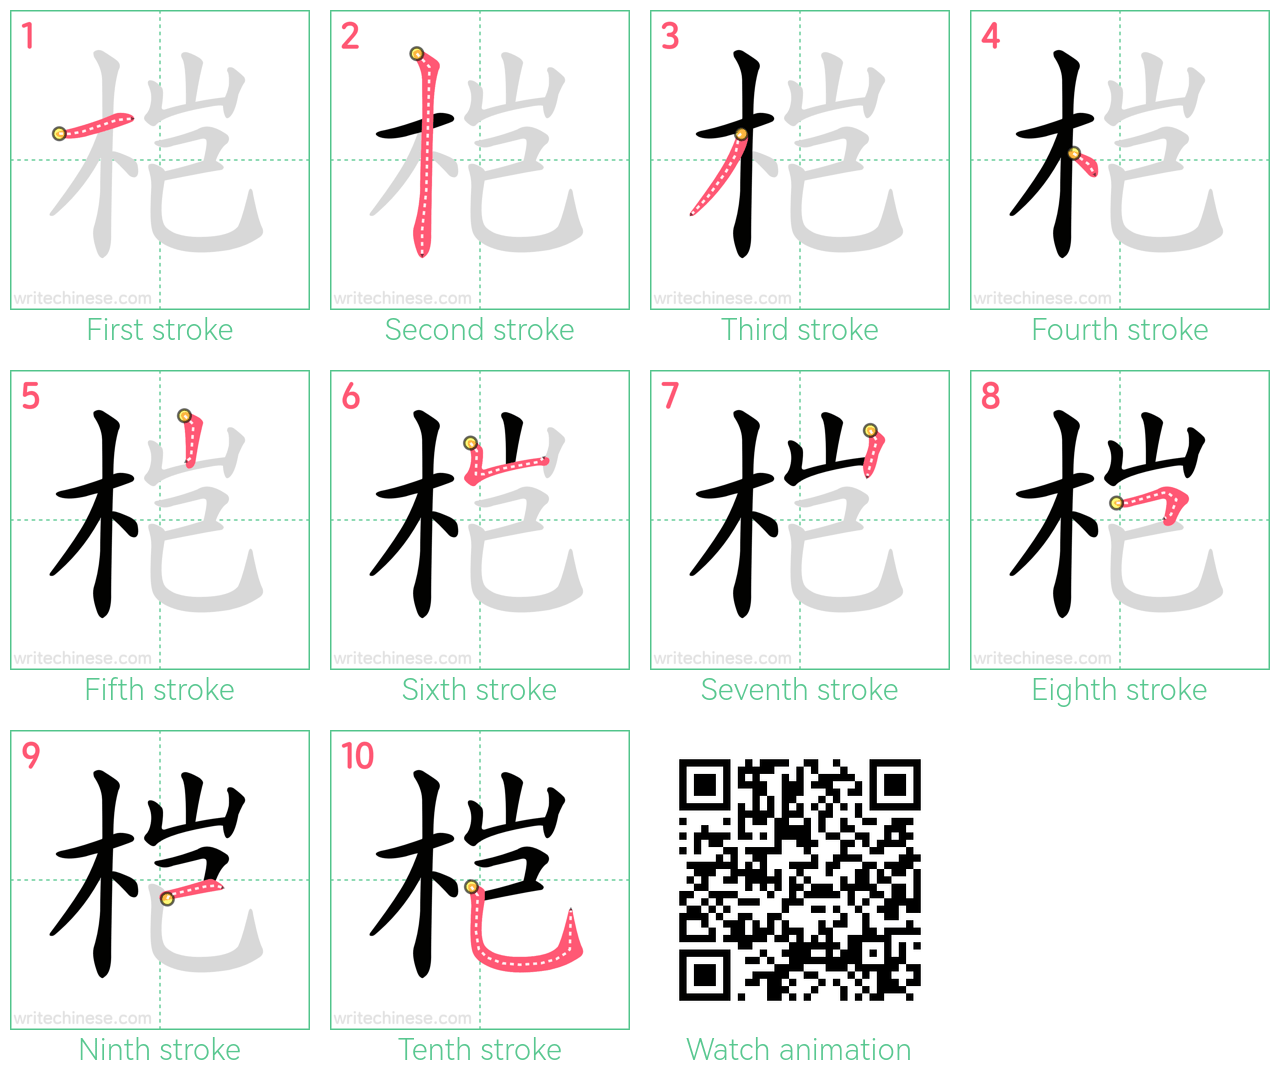 桤 step-by-step stroke order diagrams